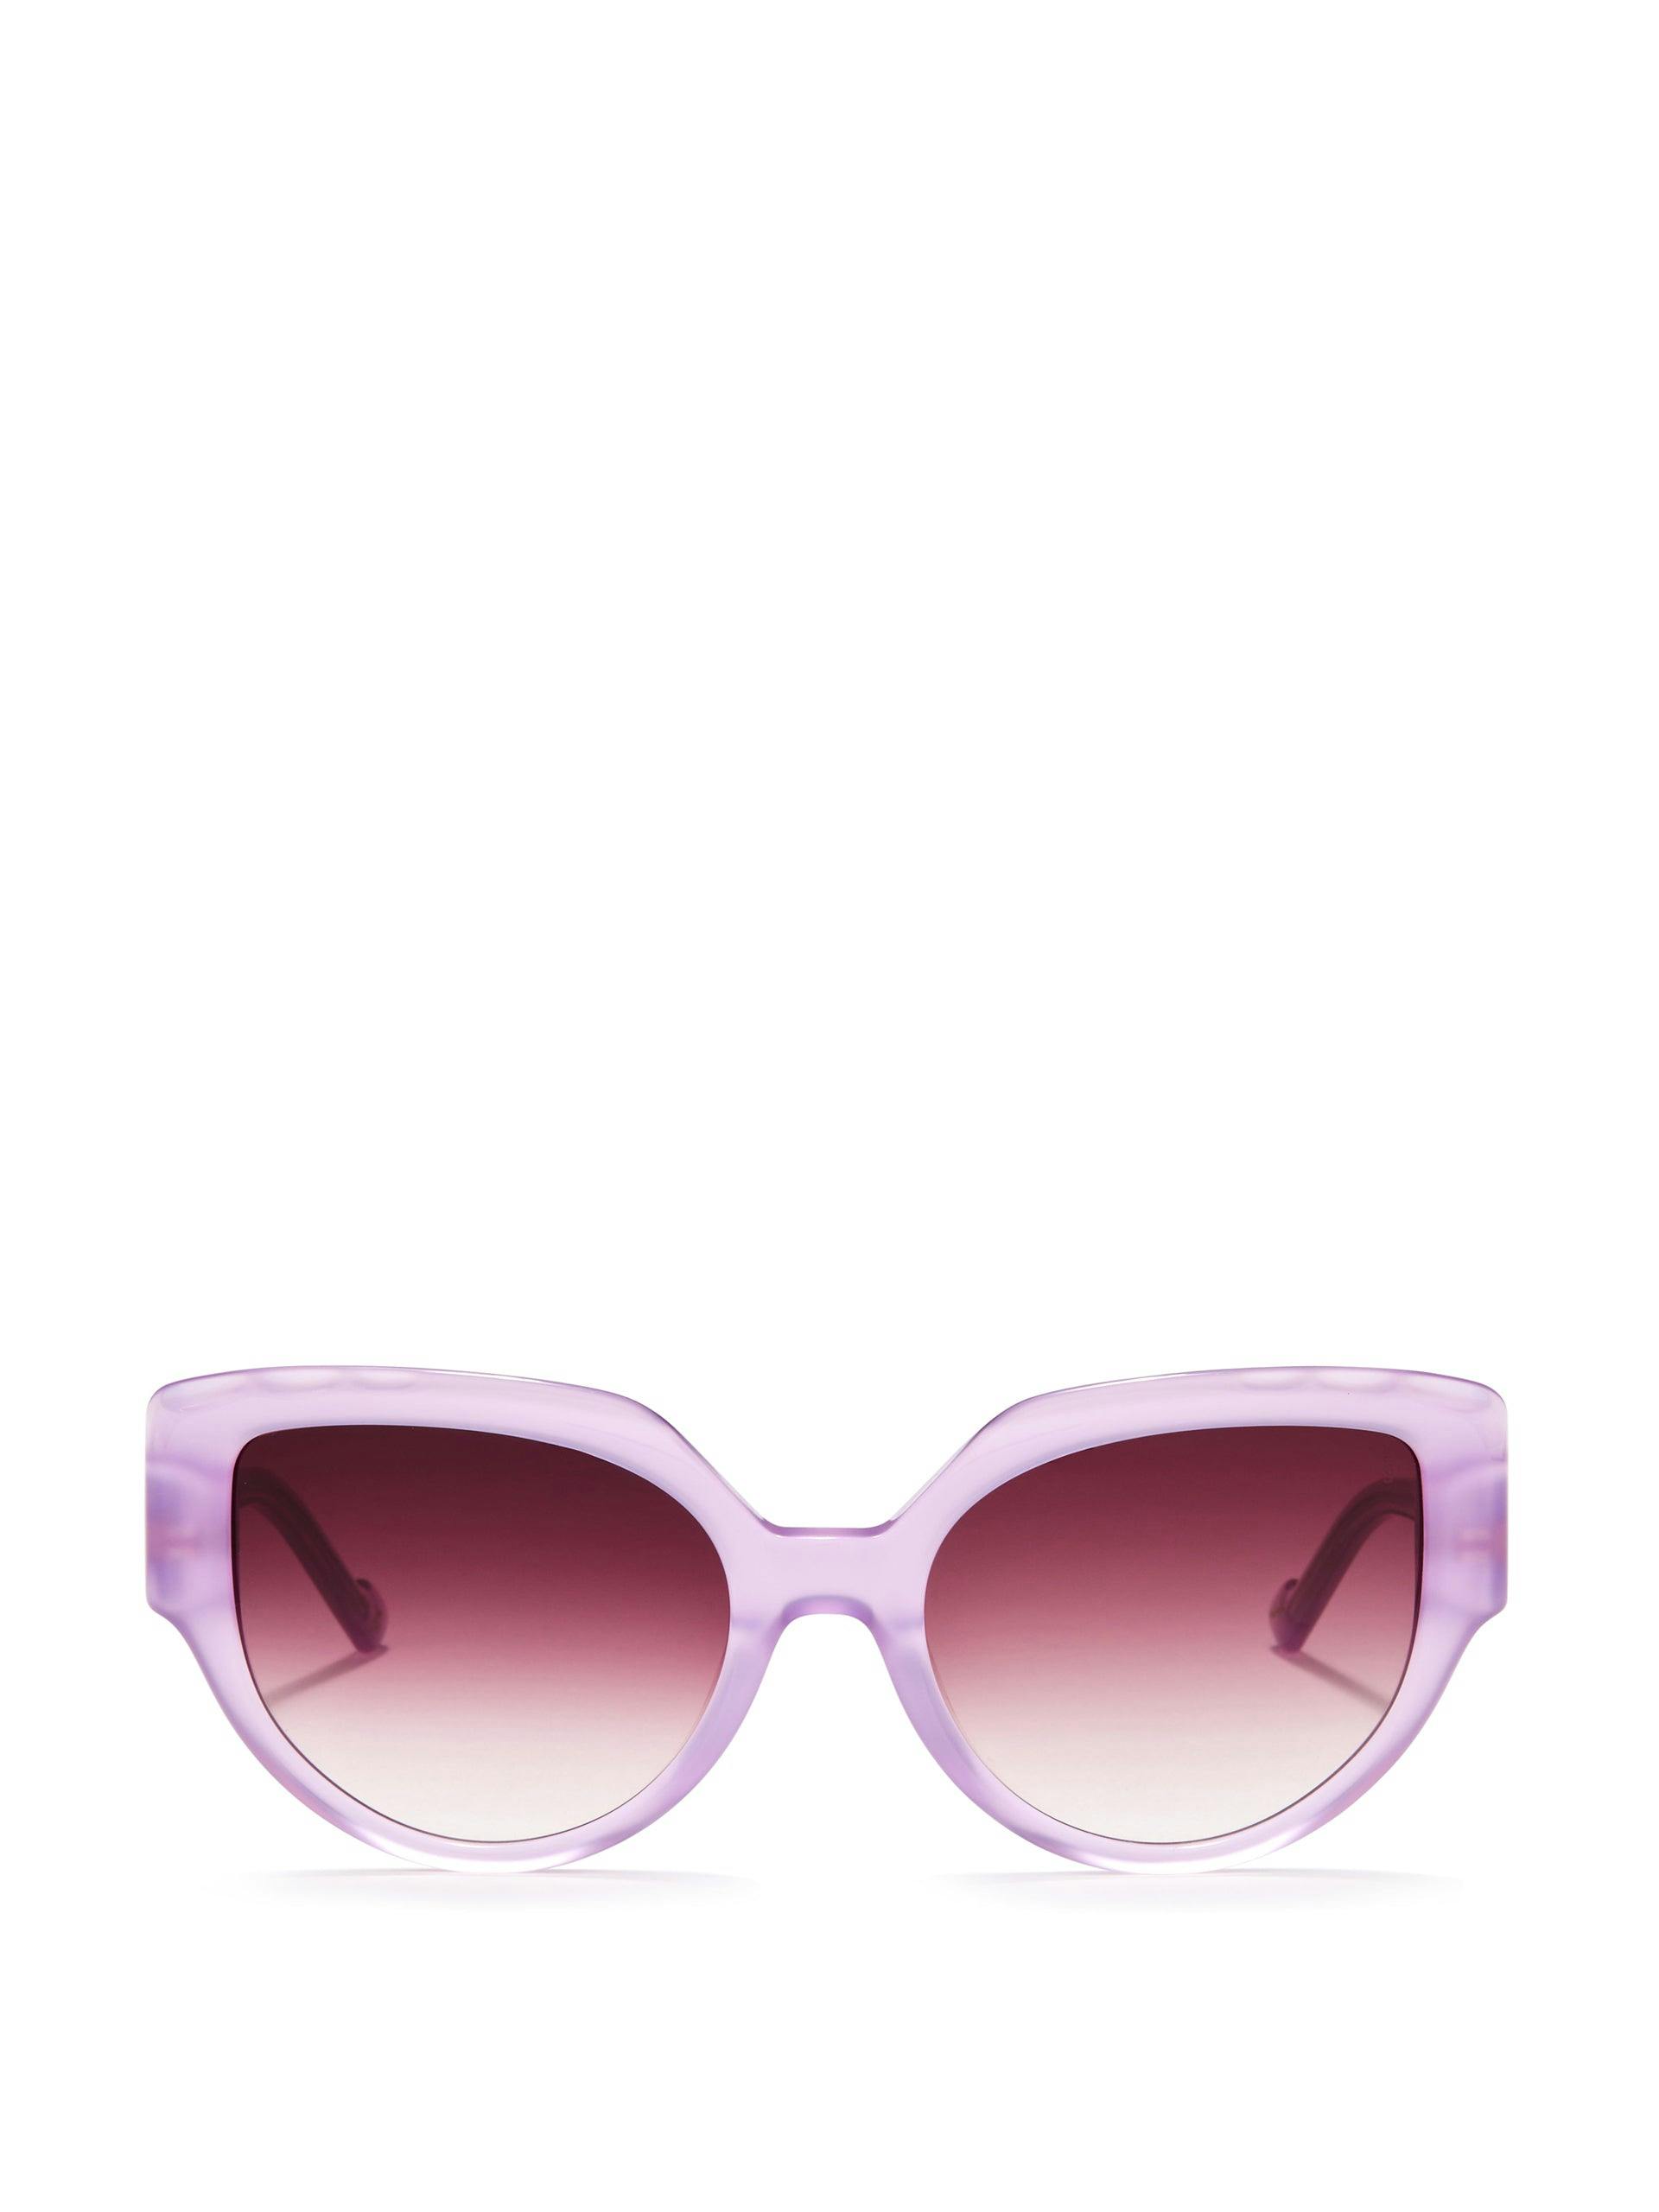 Lyla sunglasses in lavender